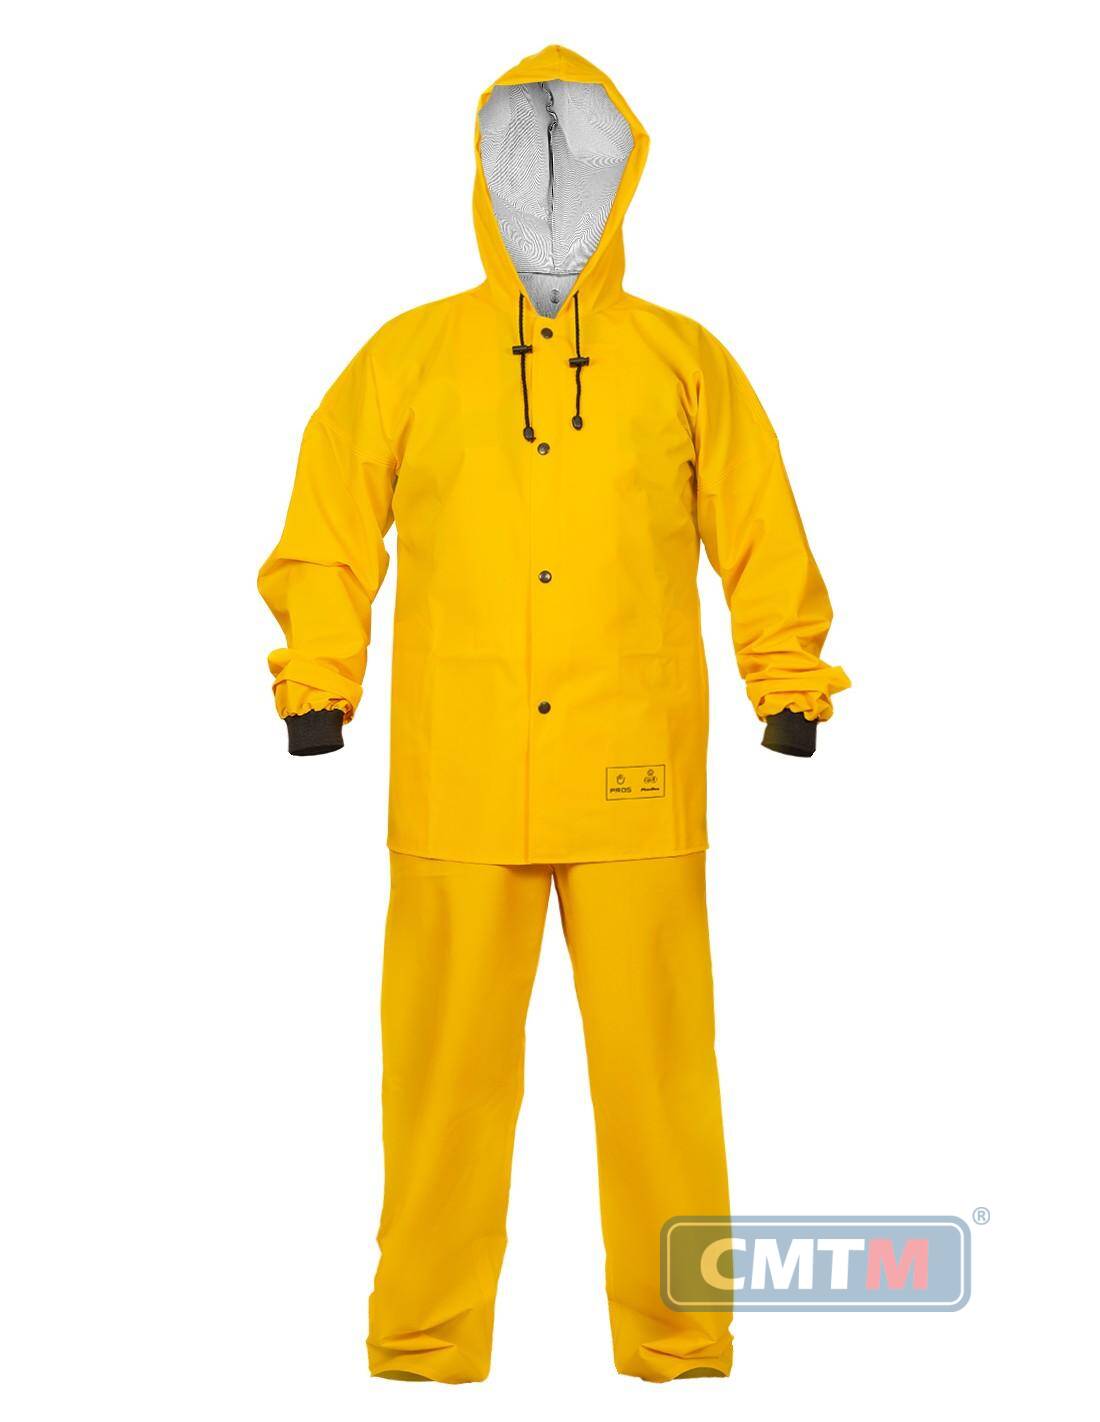 Ubranie wodoochronne AJ 101/001 żółte, rozmiar 62 XXXXL